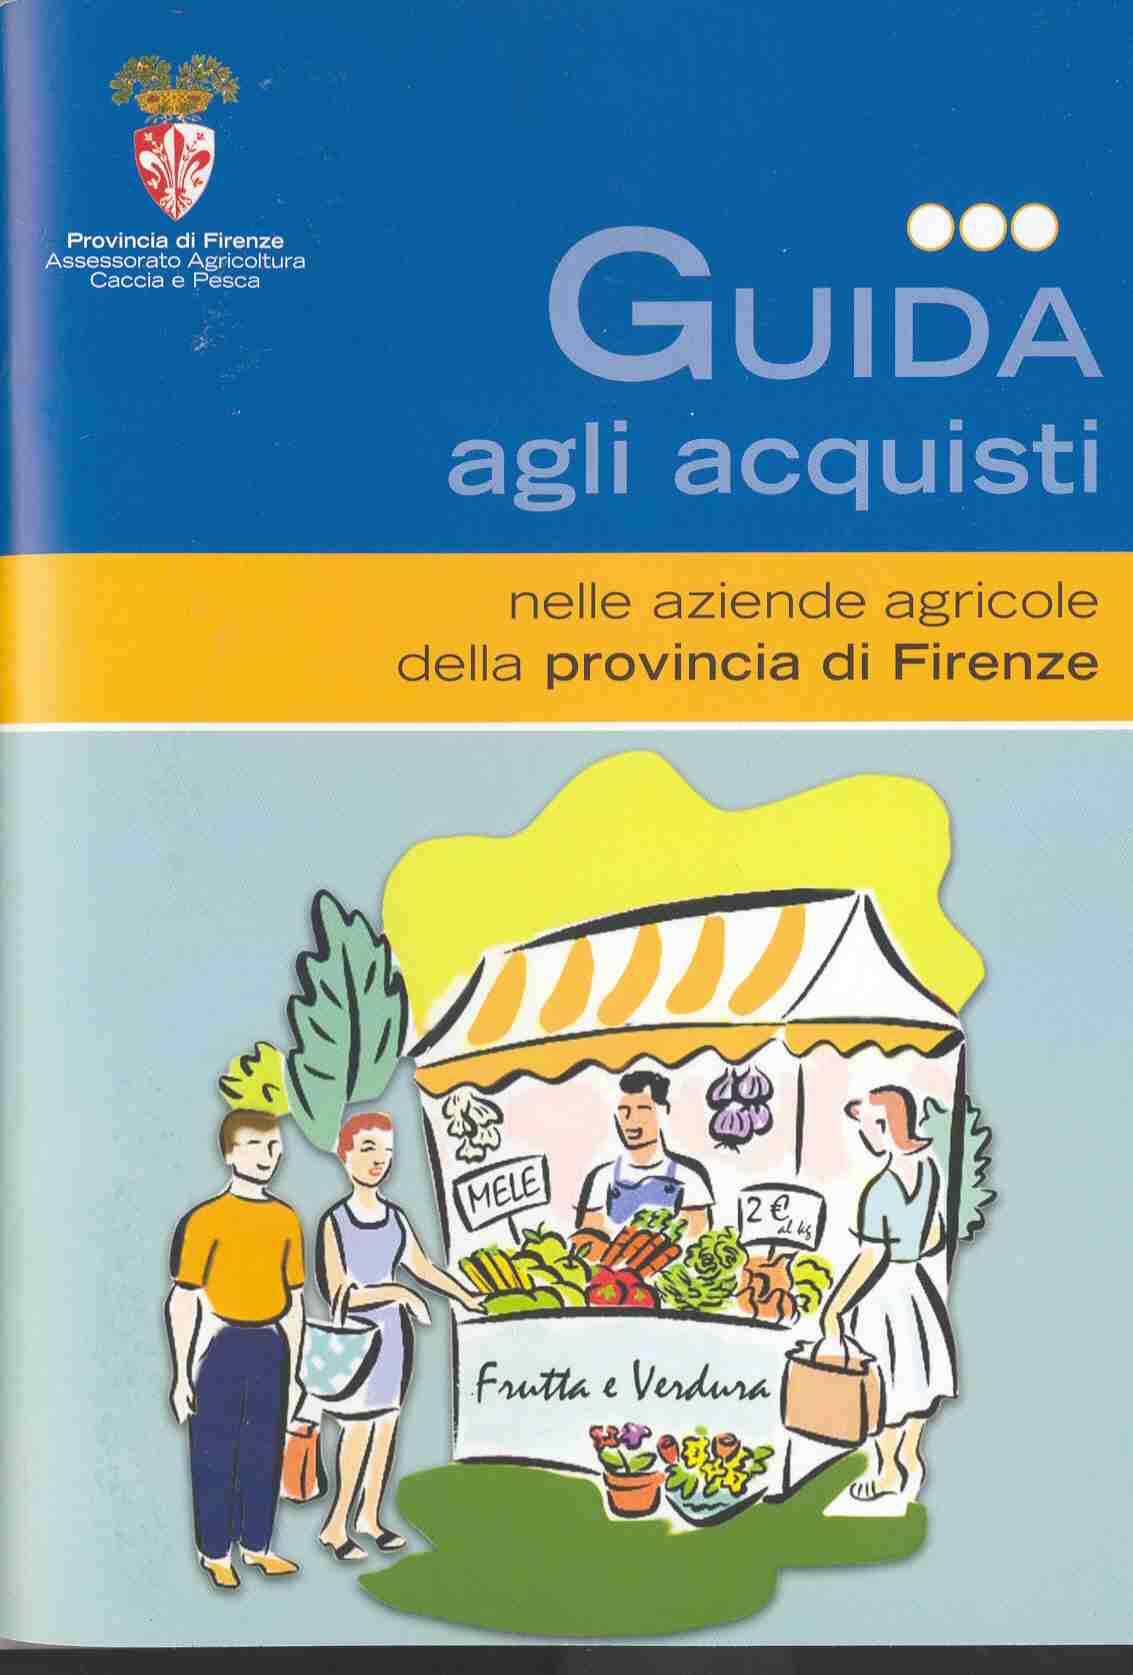 La copertina della guida della Provincia di Firenze agli acquisti nelle aziende agricole